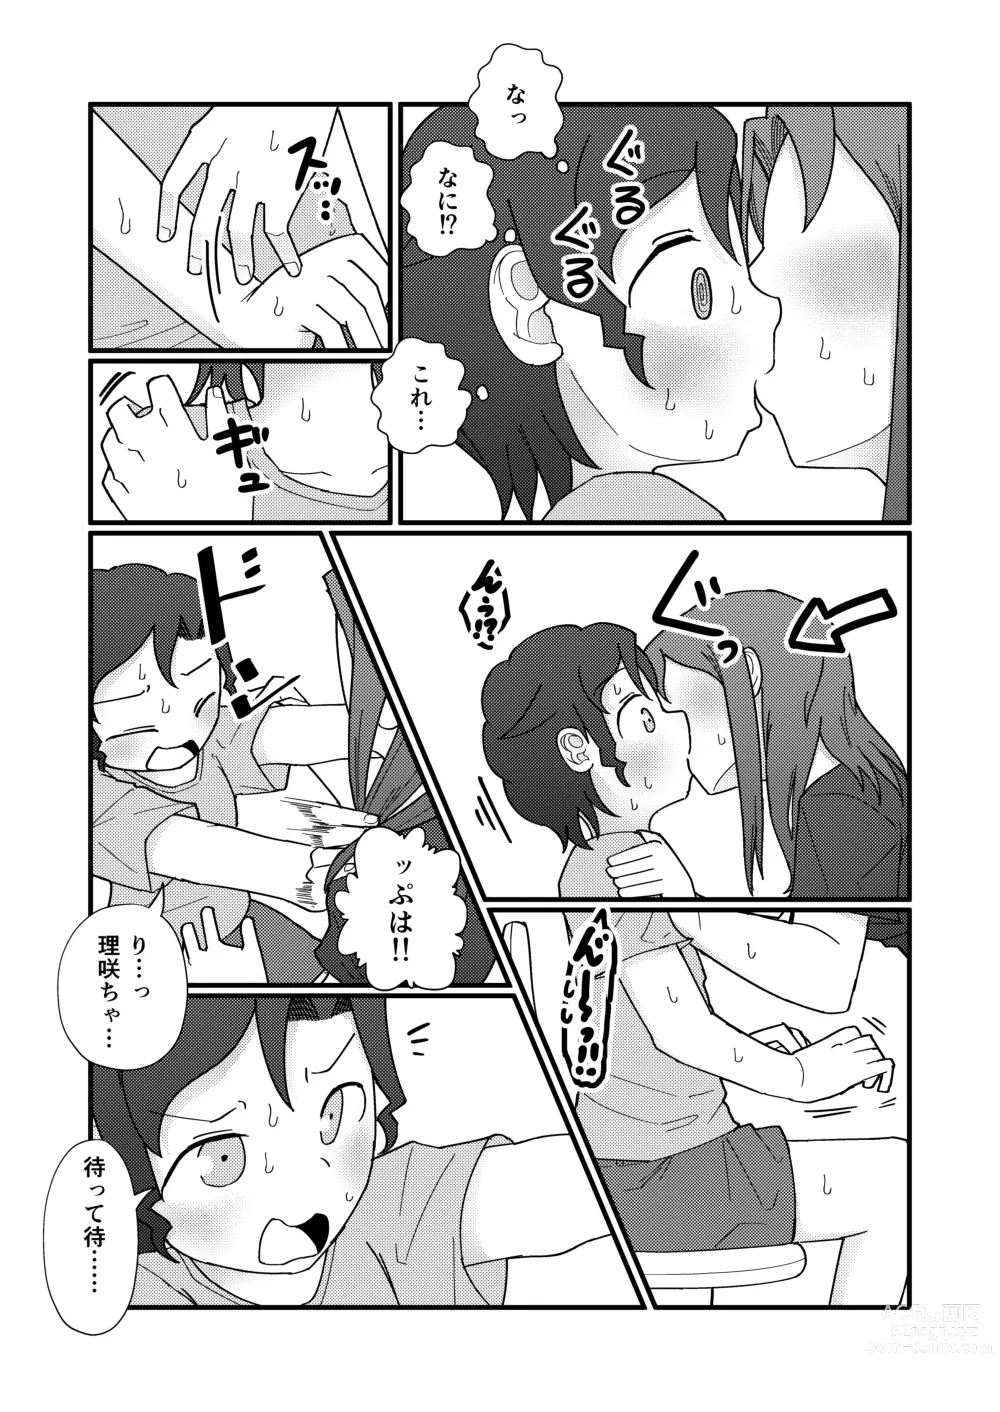 Page 21 of doujinshi Show Me!